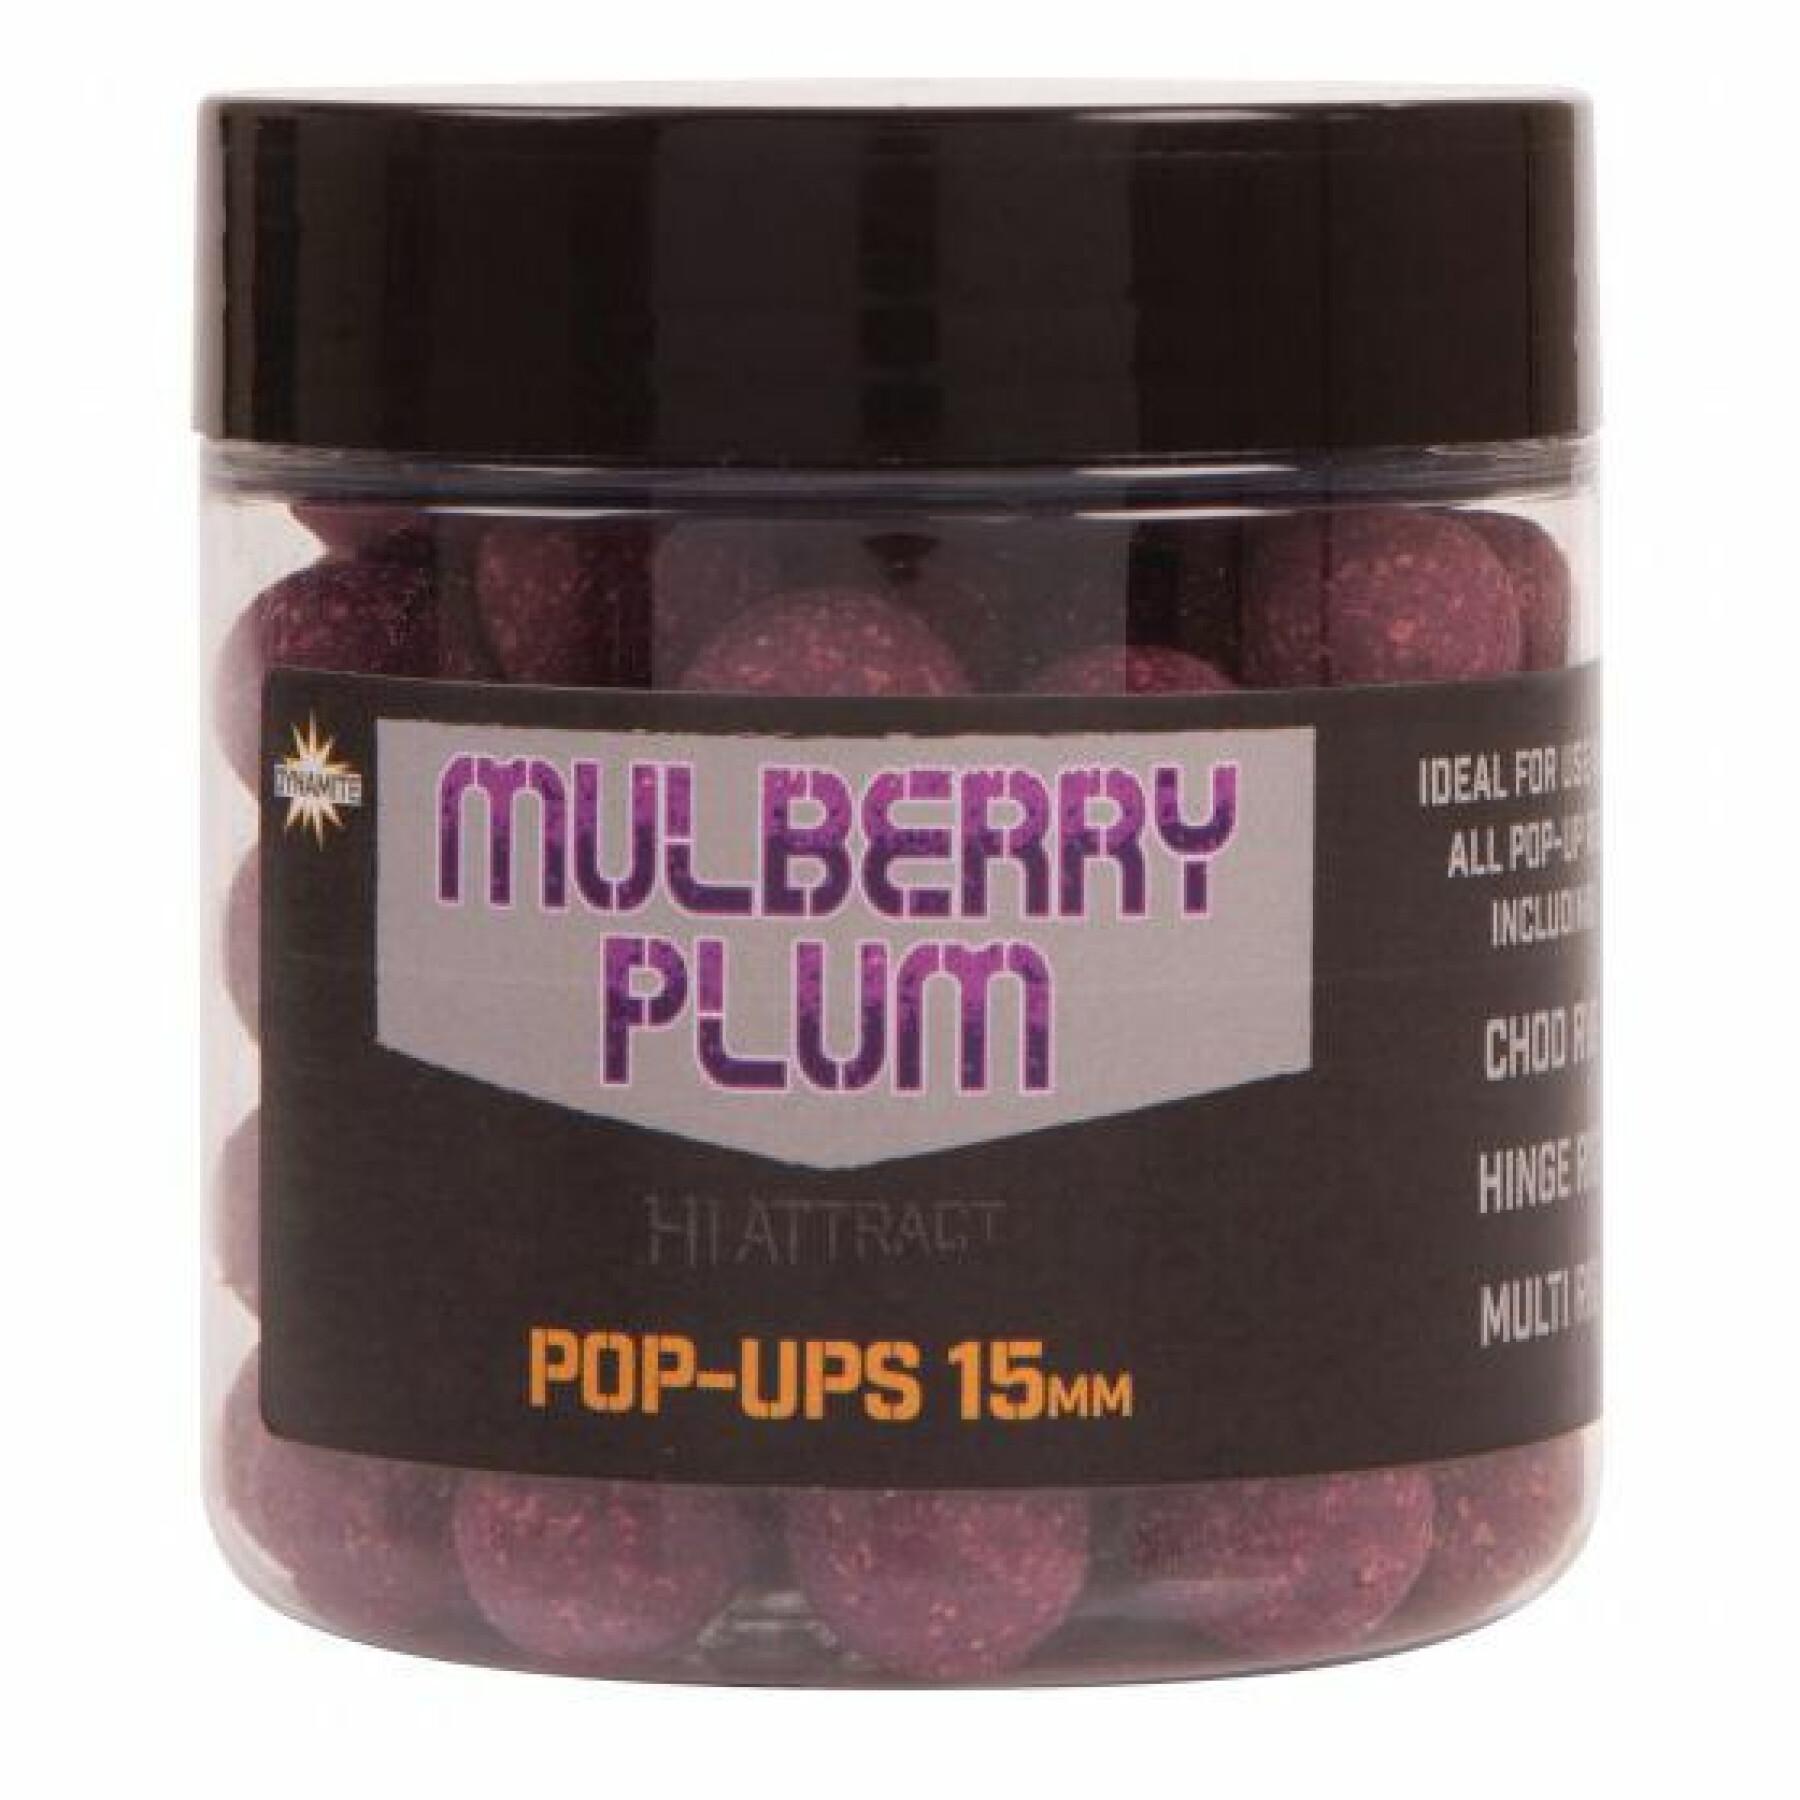 Bouillettes Pop-ups Dynamite Baits Mulberry plum